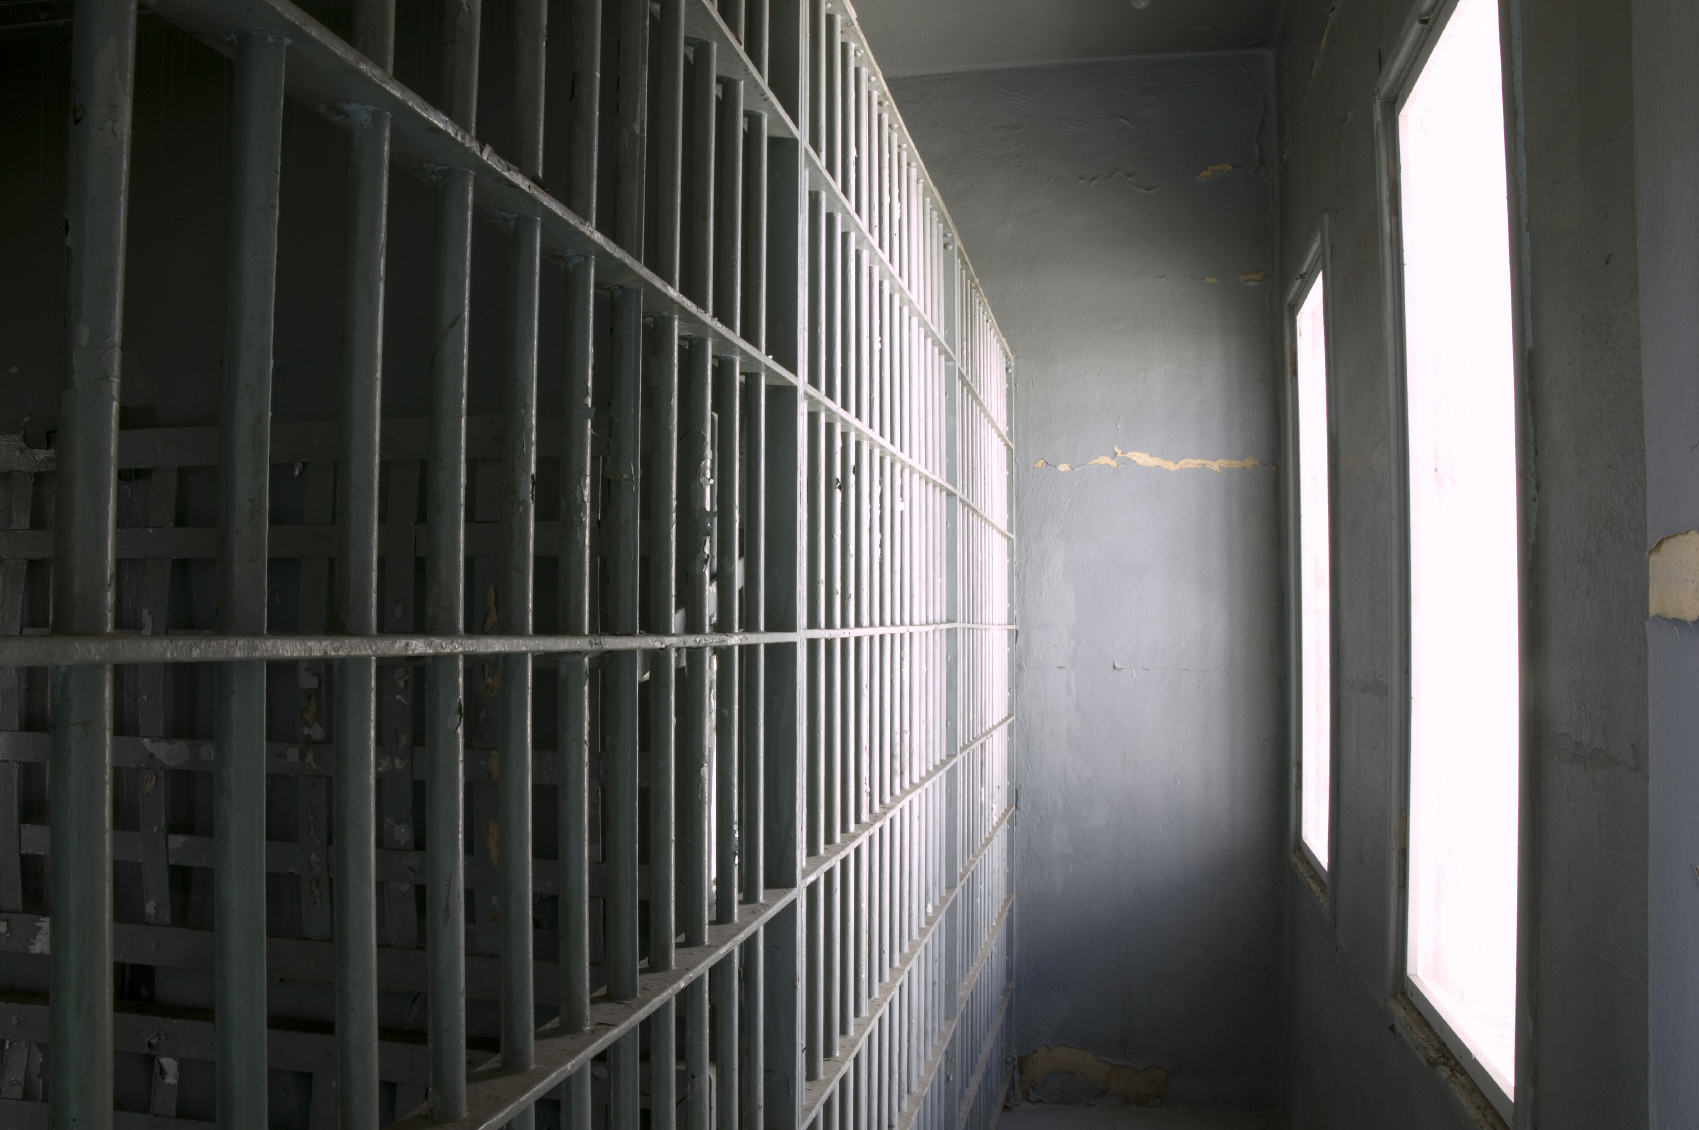 Prison bars 713512